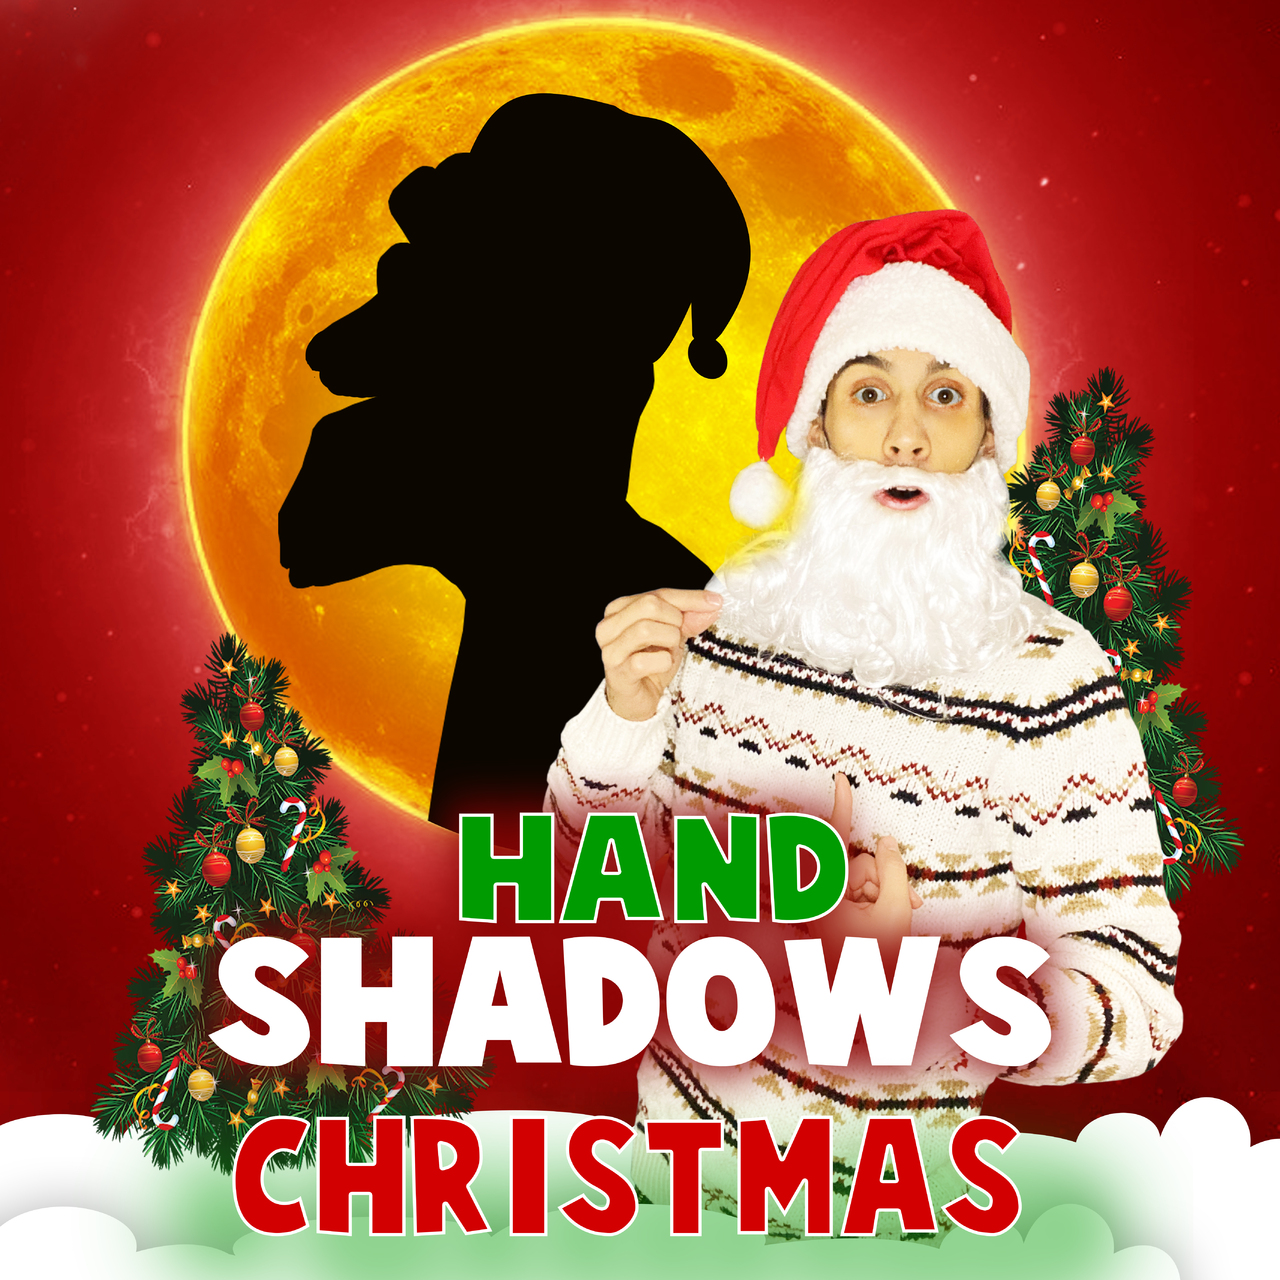 Antonio Fumarola - Hand Shadows CHRISTMAS EDITION - Handbook 2020